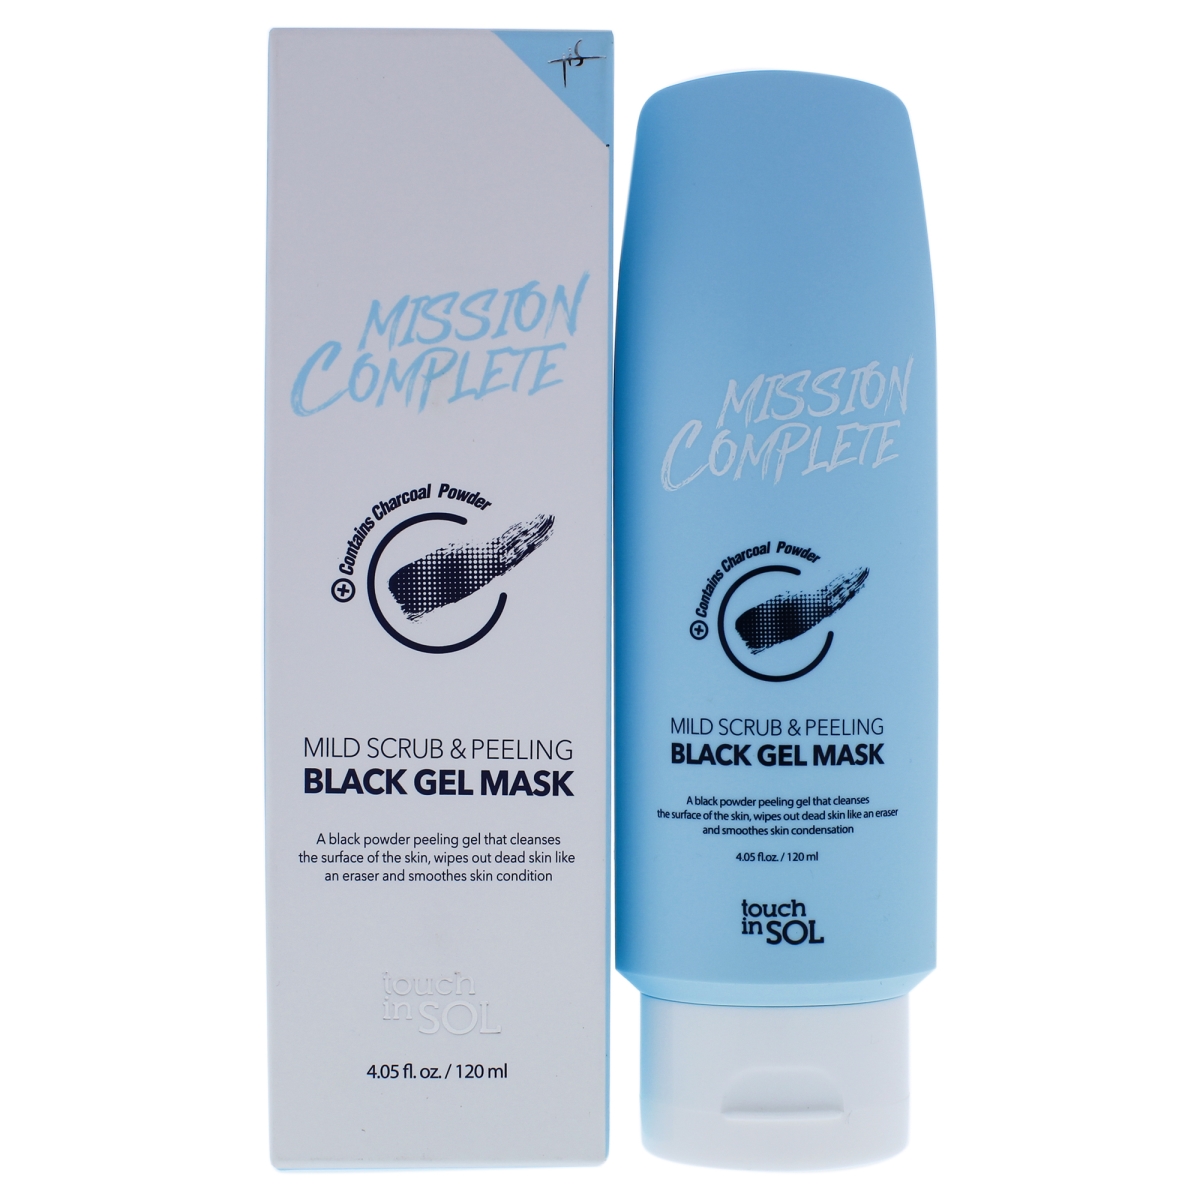 I0092064 Mission Complete Mild Scrub & Peeling Black Gel Mask For Women - 4.05 Oz